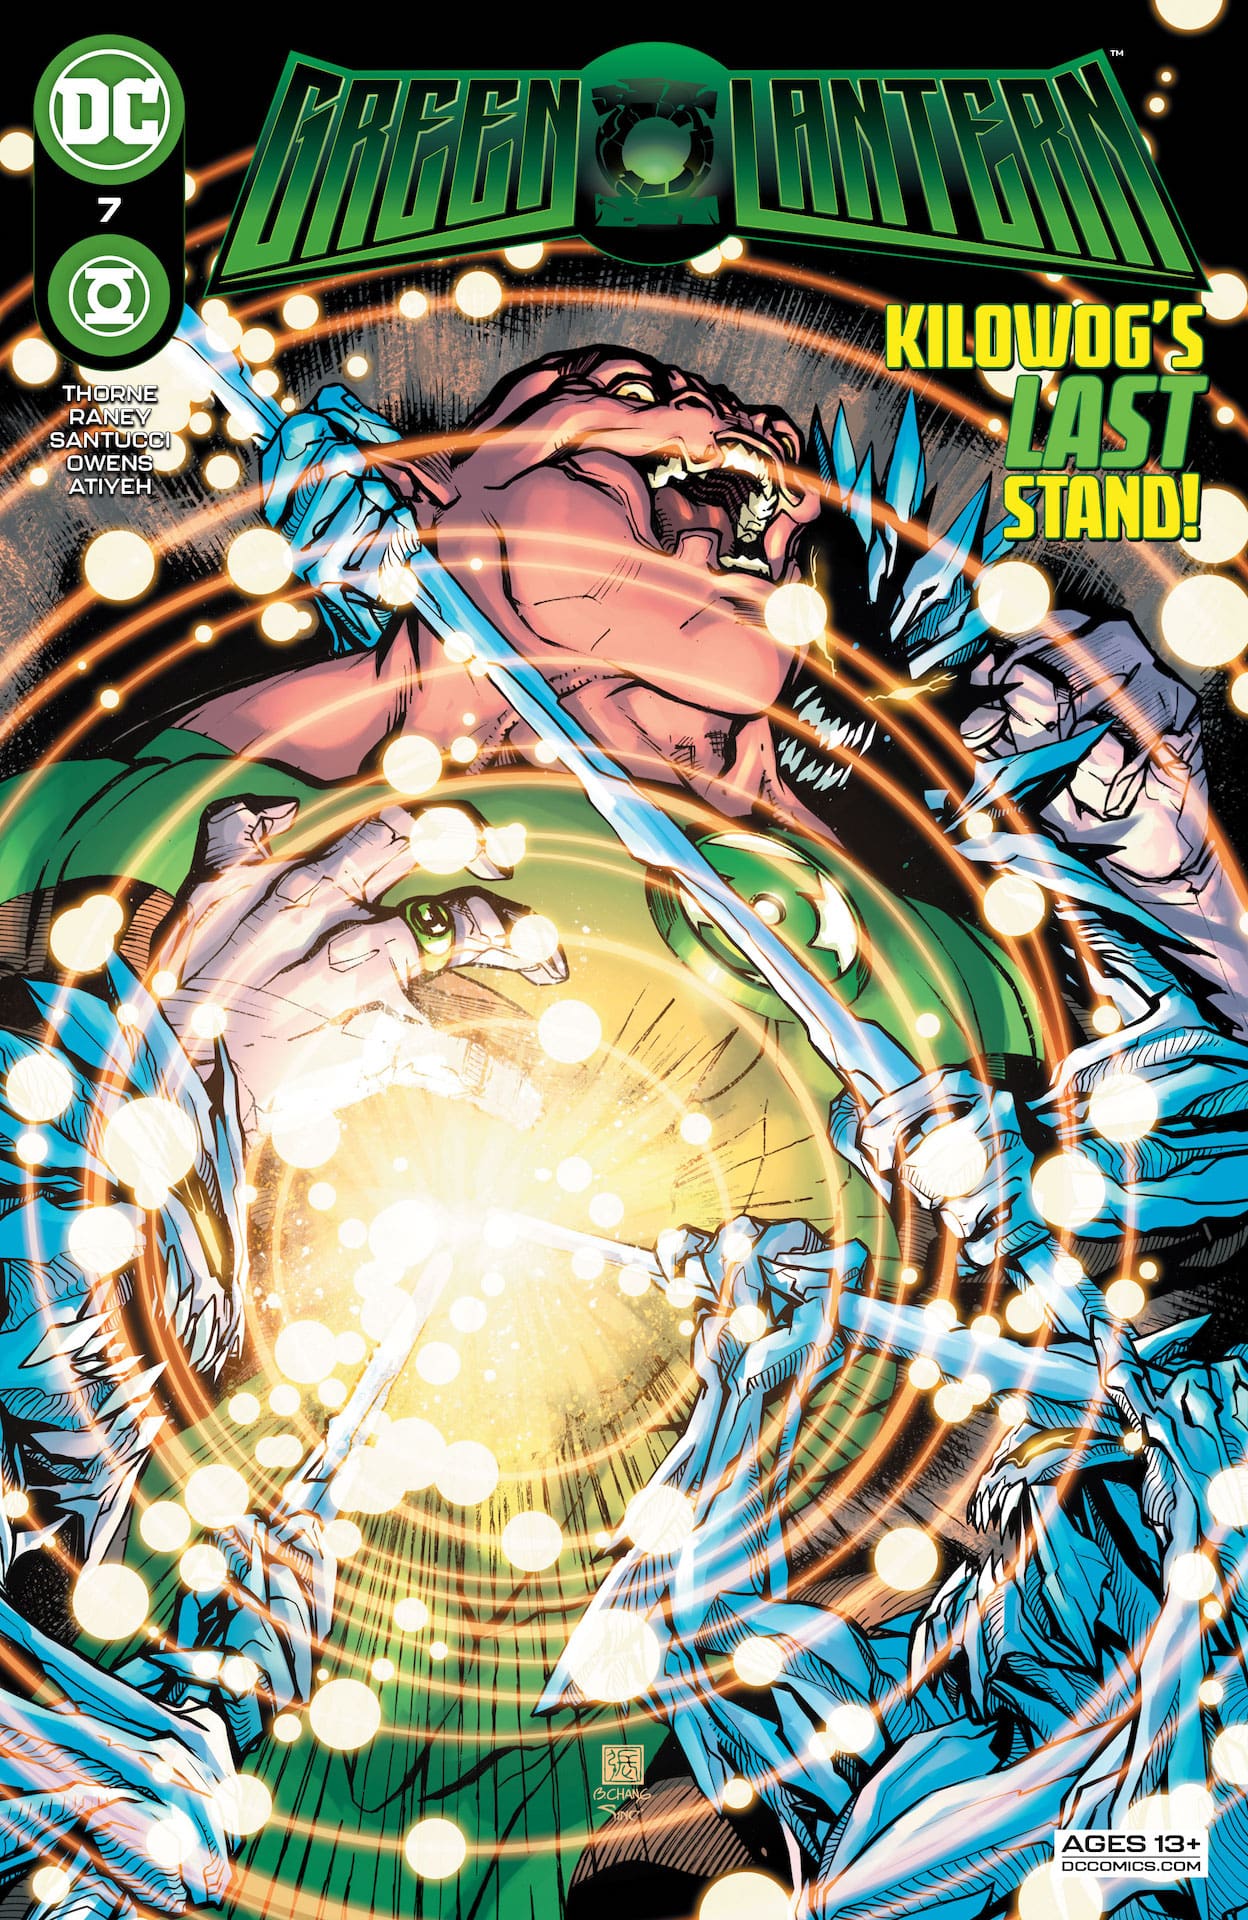 DC Preview: Green Lantern #7